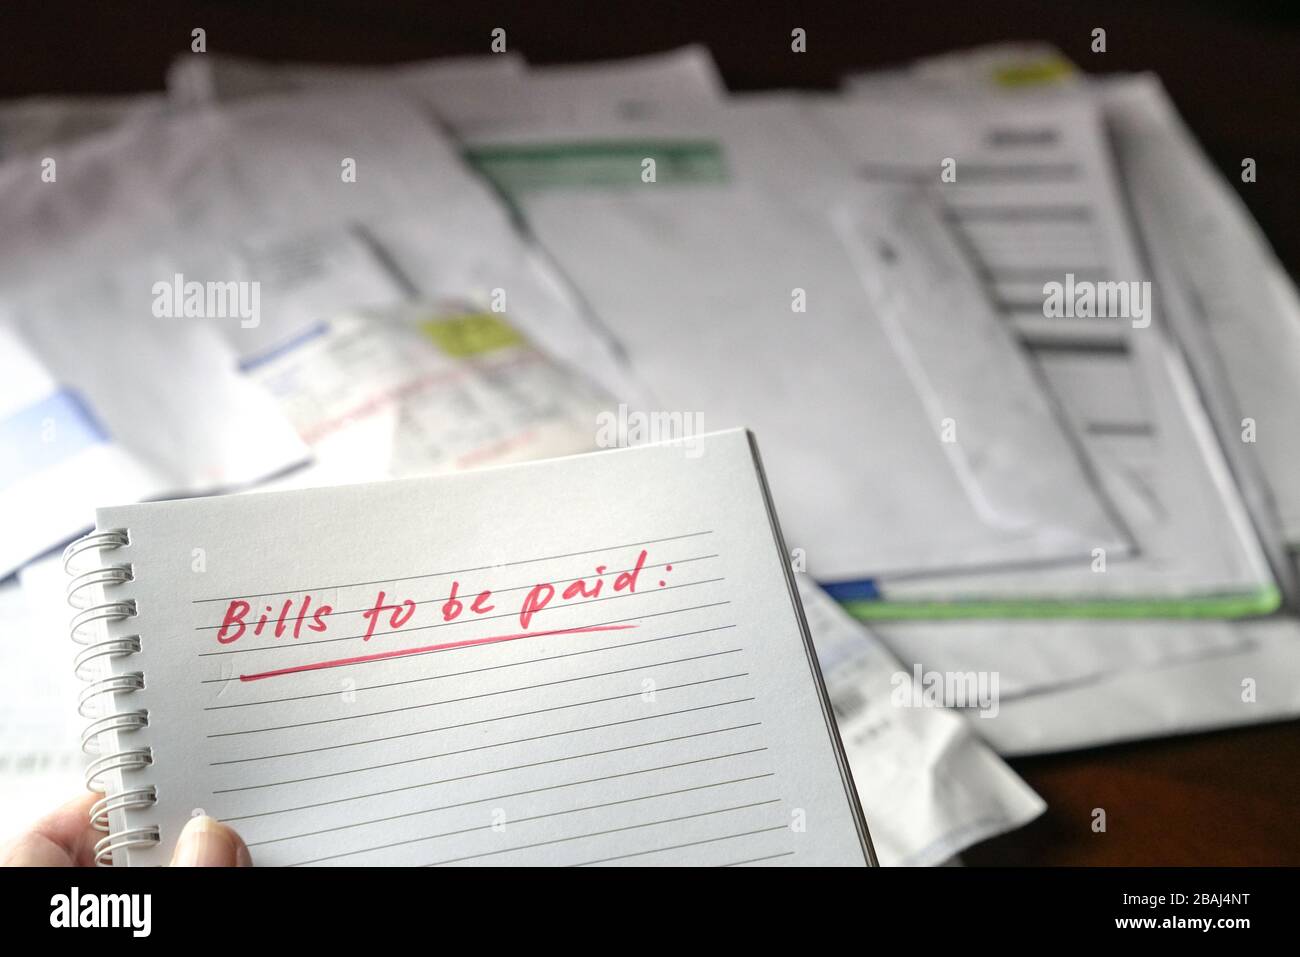 Zu zahlende Rechnungen, rot geschriebene Wörter auf Notizbuch mit Rechnungen und Rechnungen im Hintergrund. Konzept der Arbeitslosigkeit oder Rezession. Stockfoto